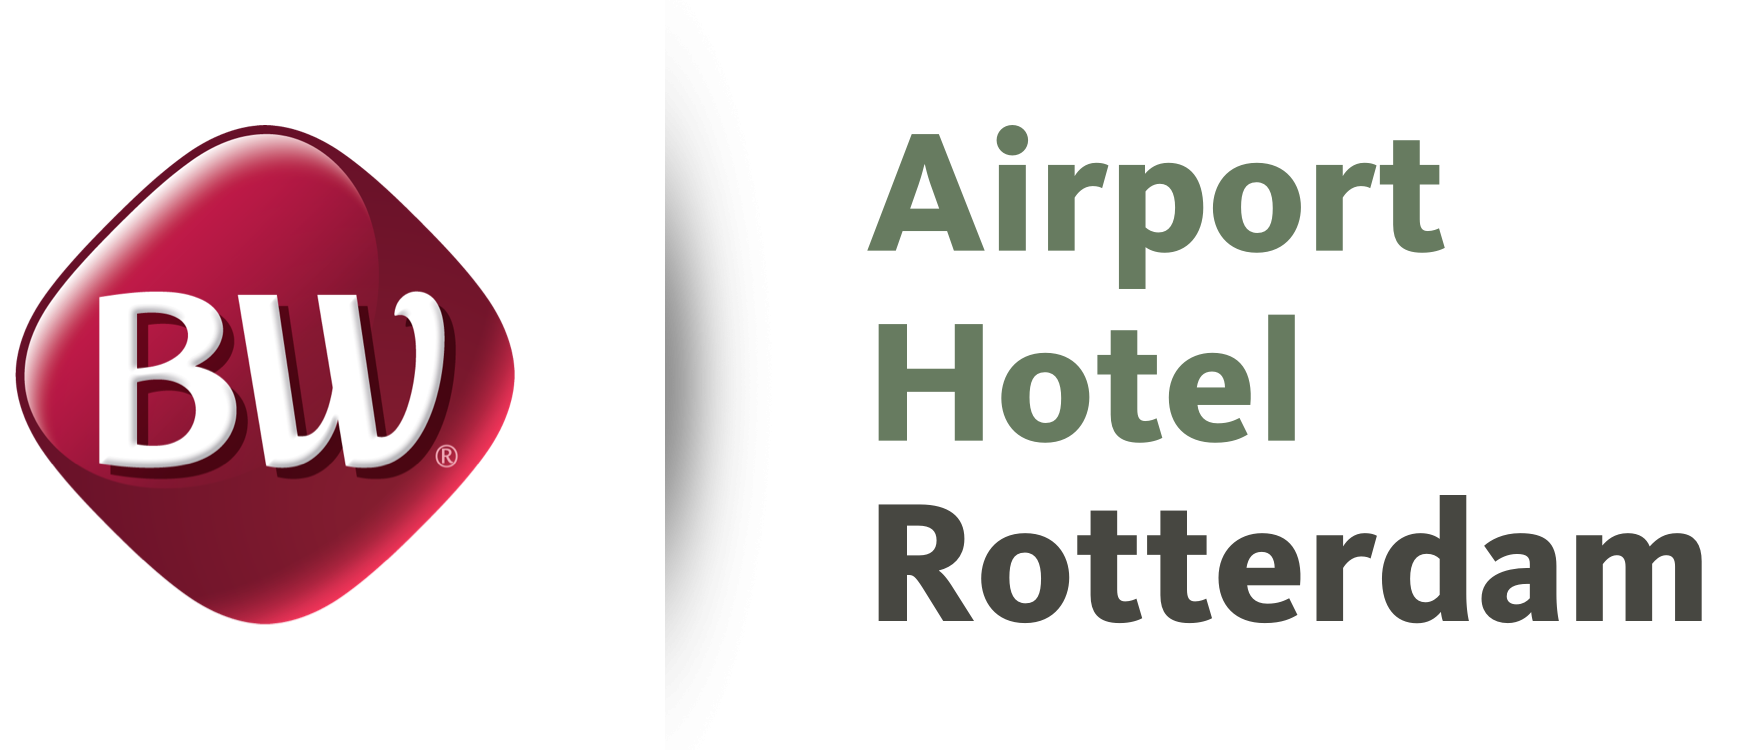 Airport Hotel Rotterdam